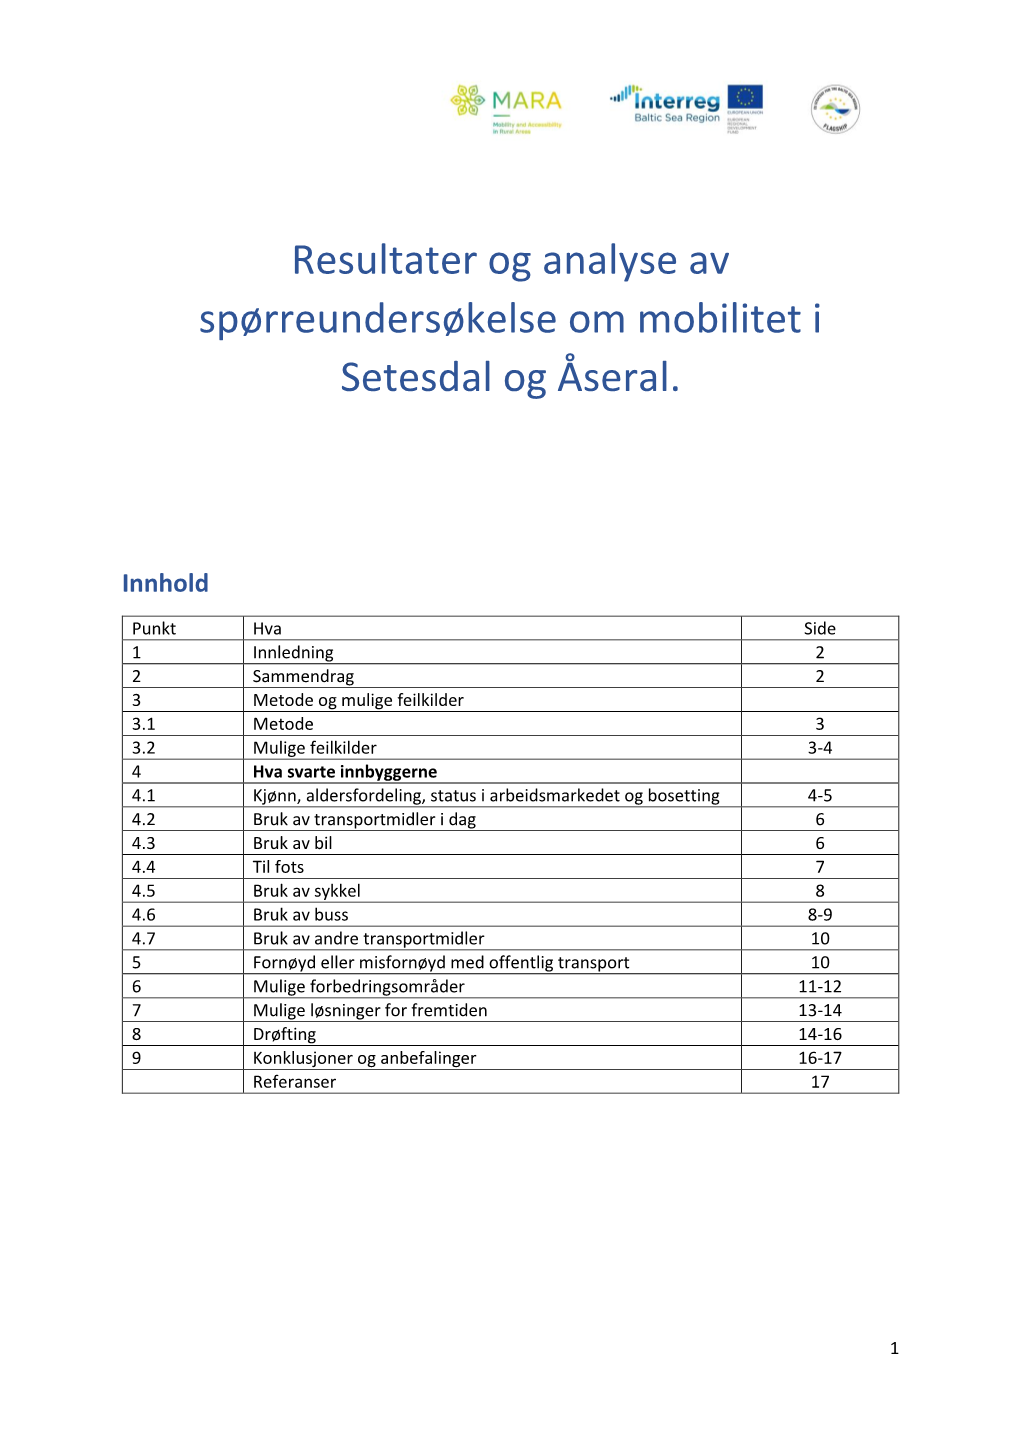 Resultater Og Analyse Av Spørreundersøkelse Om Mobilitet I Setesdal Og Åseral